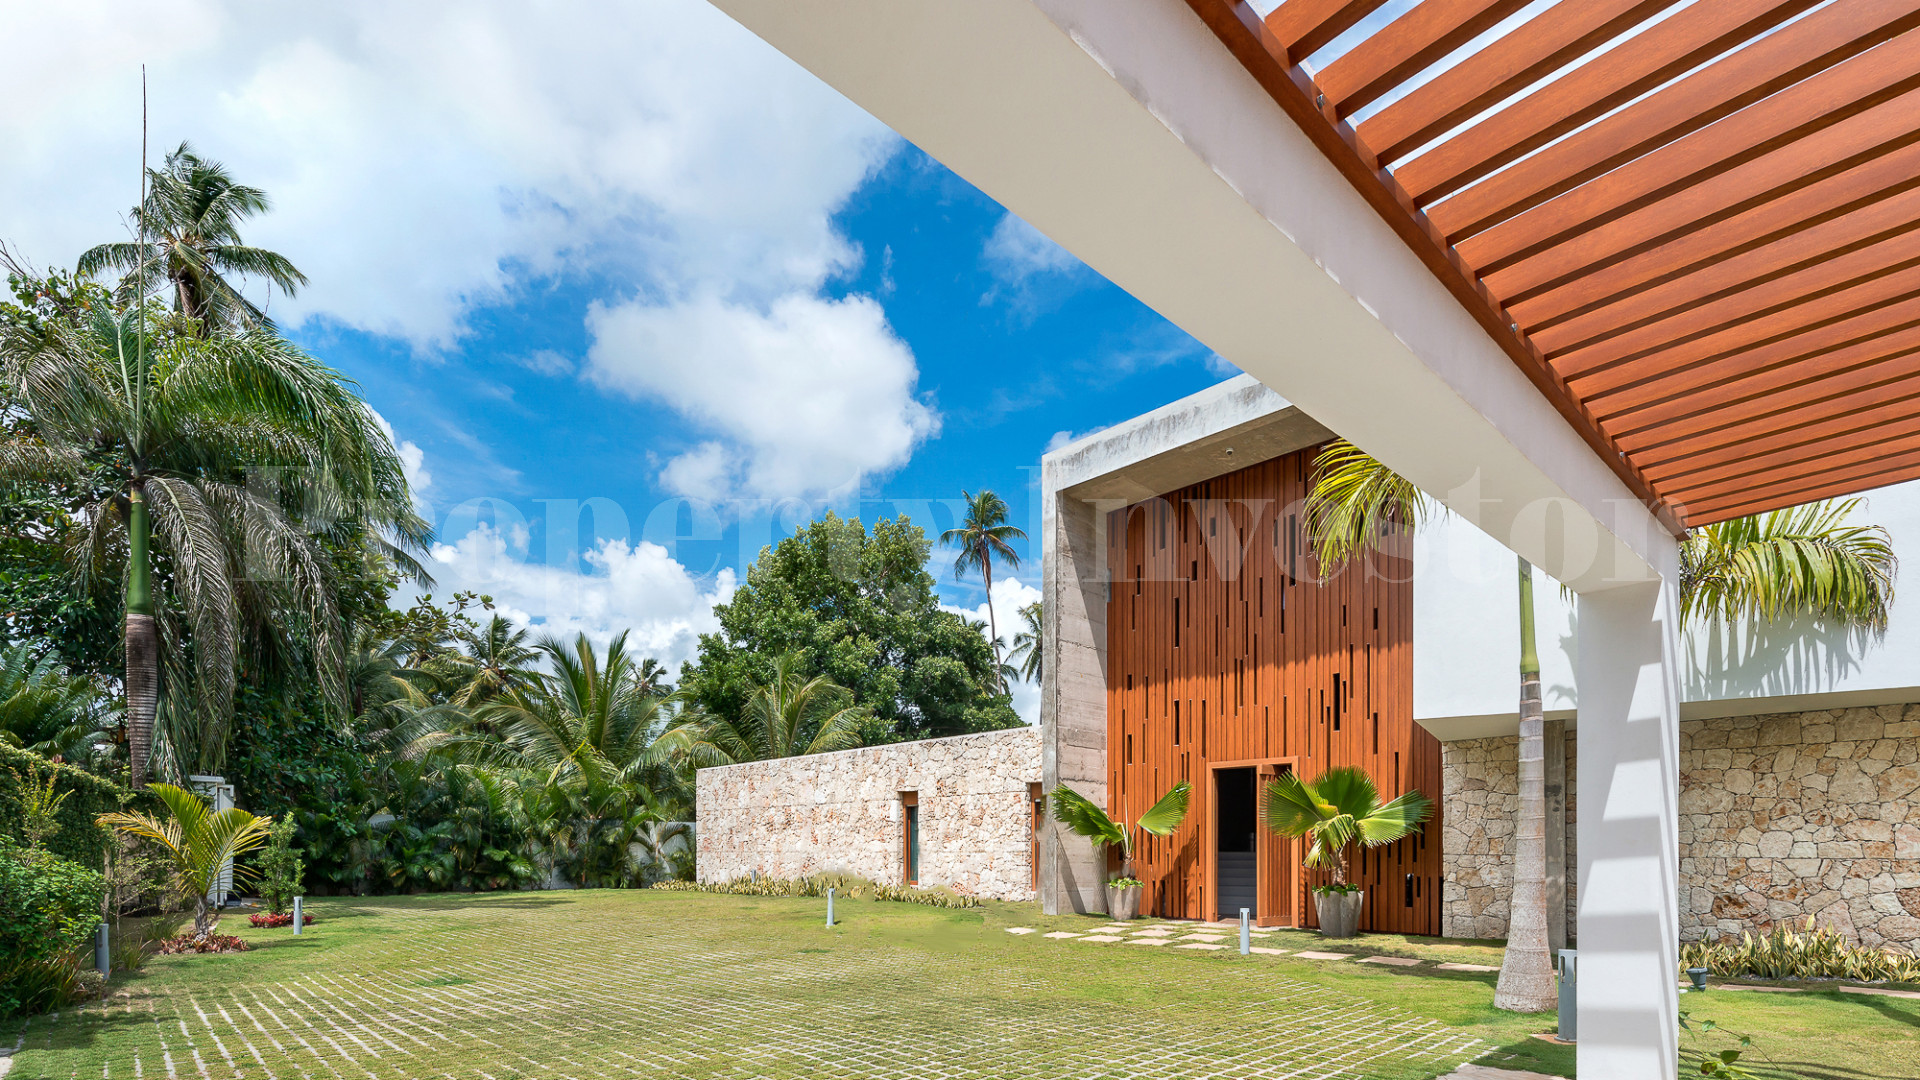 Incredible 5 Bedroom Ultra Luxurious Designer Villa for Sale in Las Terrenas, Dominican Republic